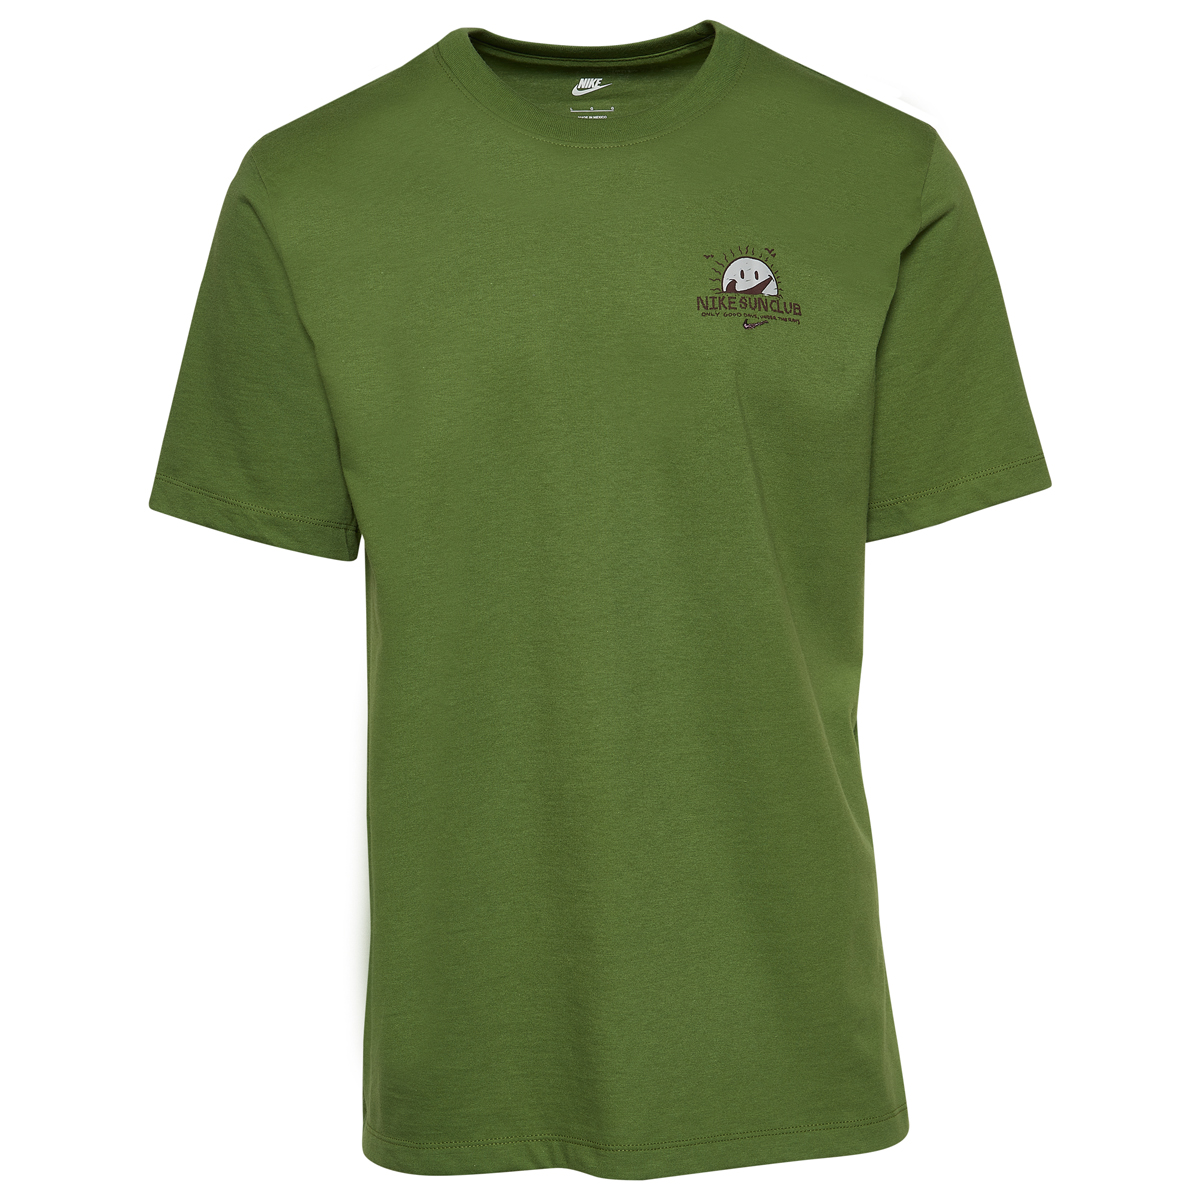 nike-air-max-90-sun-club-shirt-treeline-green-1